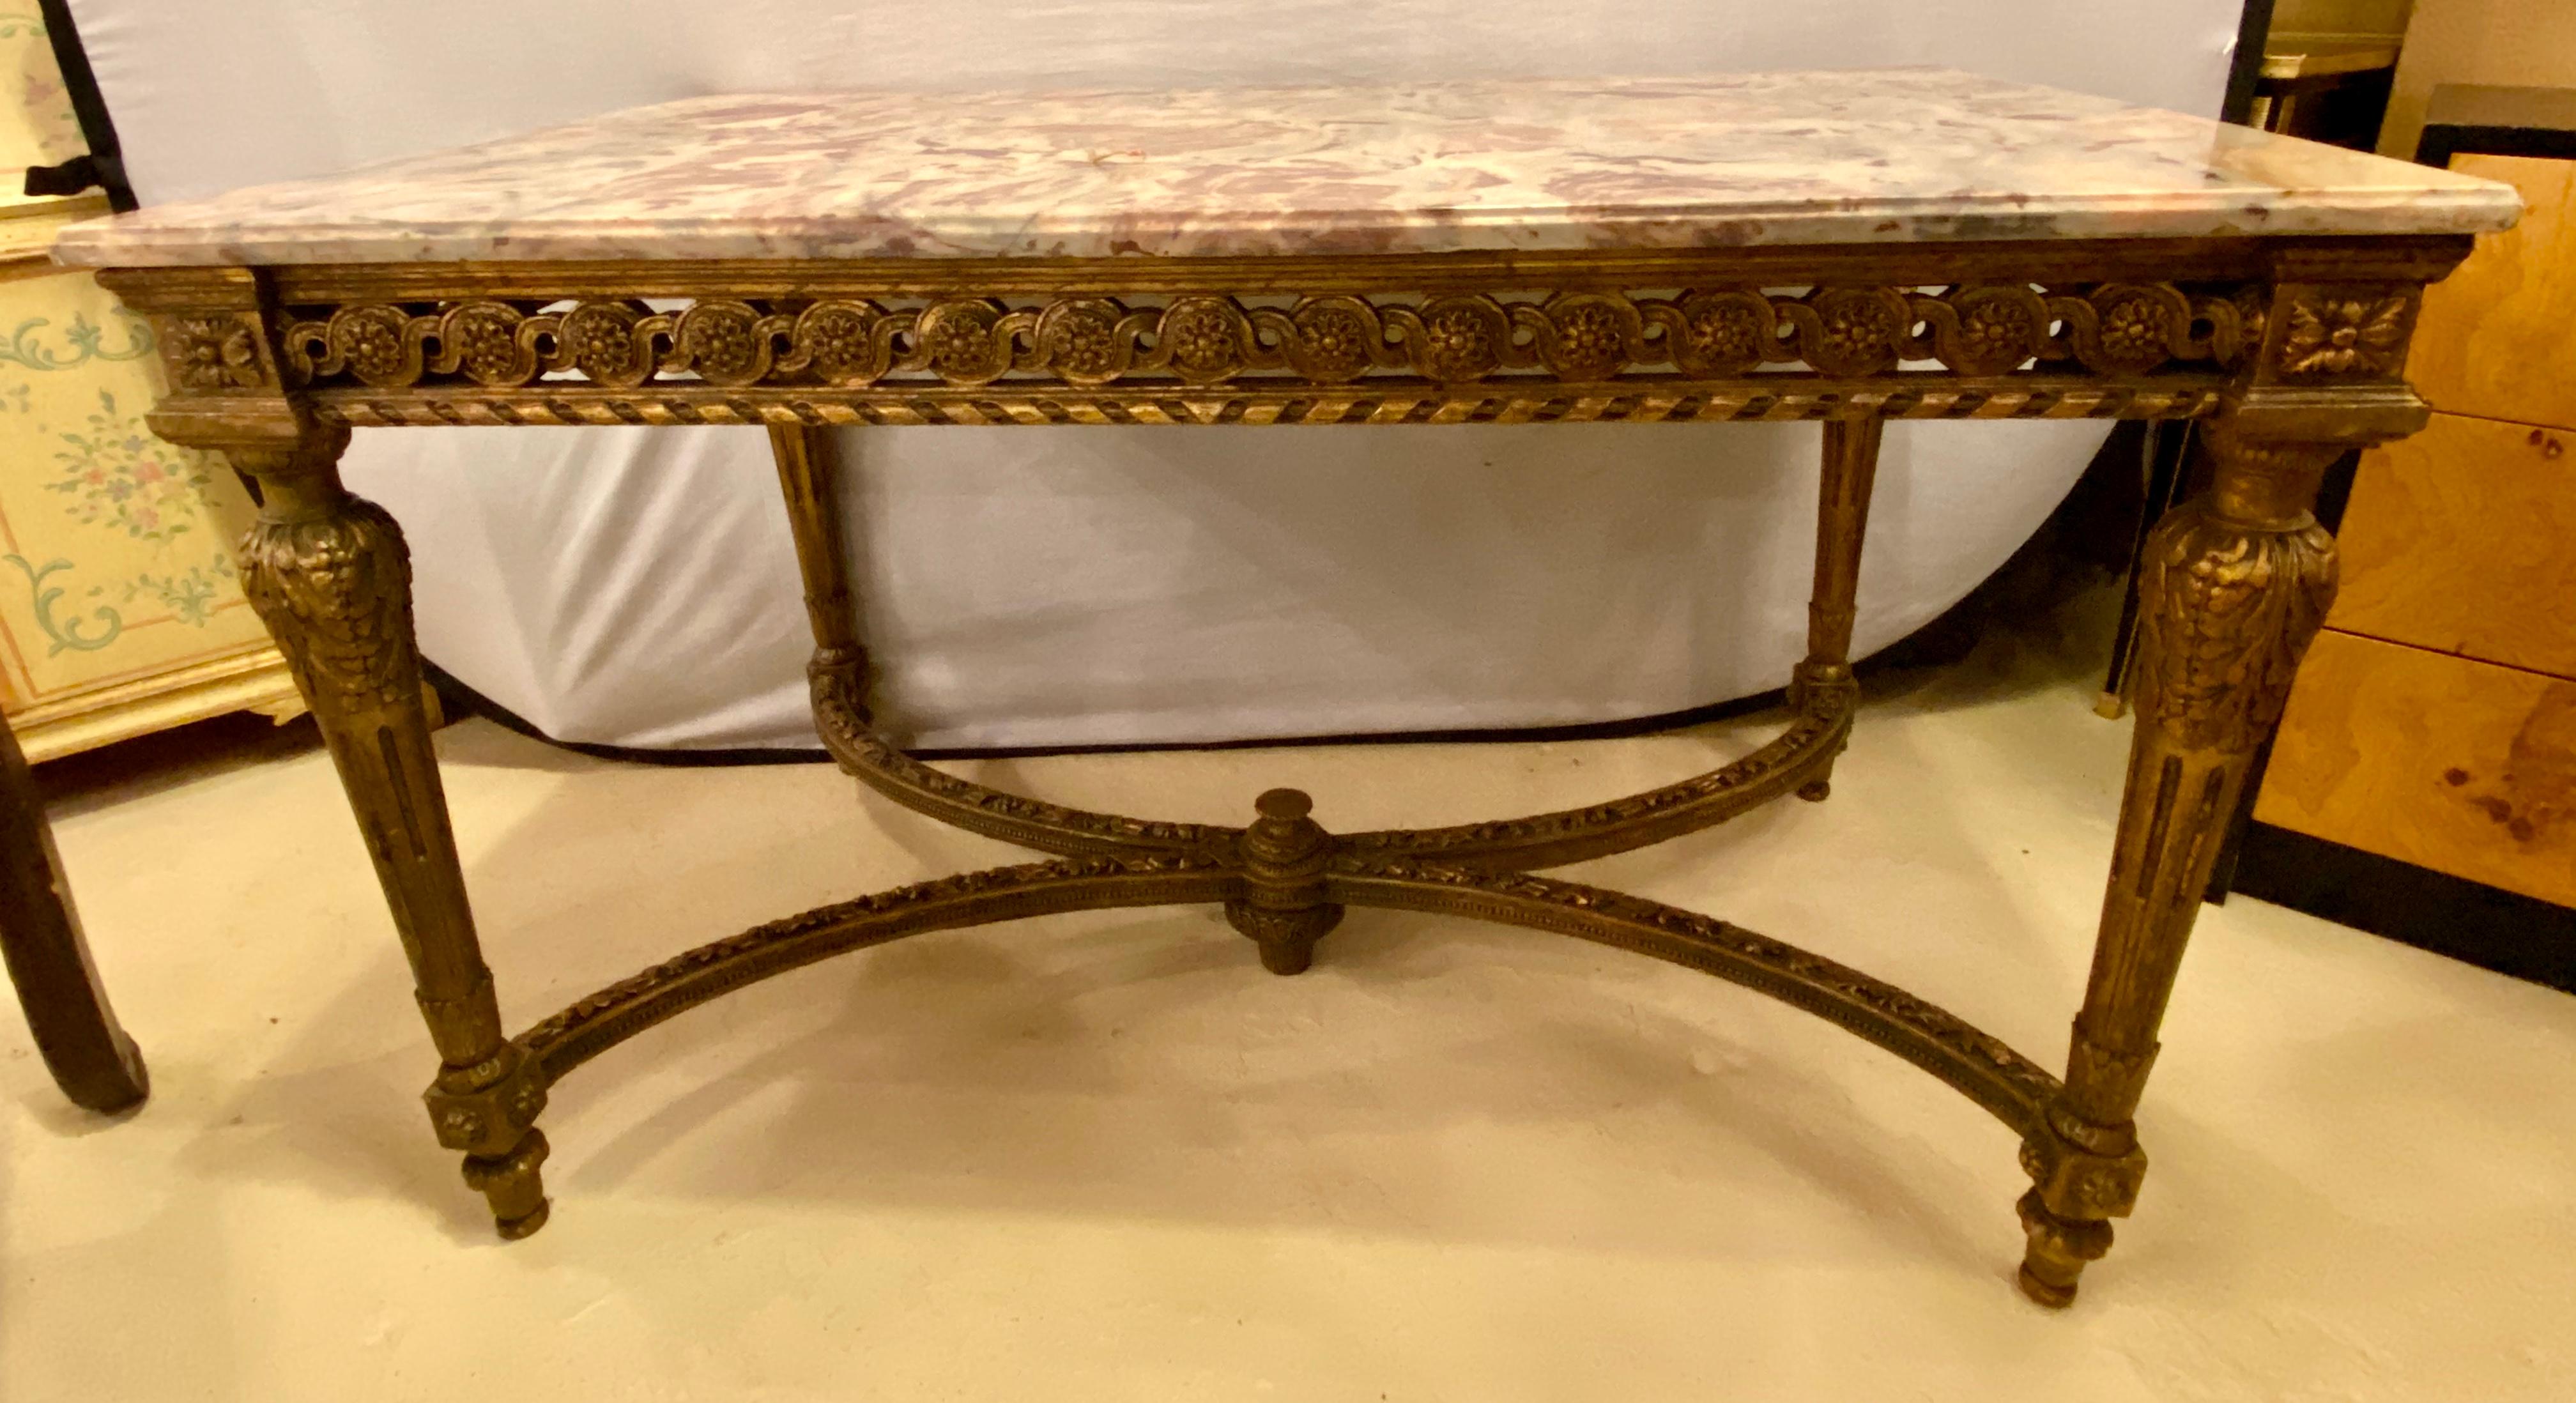 Table centrale estampillée Whiting avec une base dorée et un plateau en marbre fin veiné rose, gris et blanc. La partie supérieure a été réparée par des professionnels. La table centrale de style Louis XVI a été guidée par un antiquaire. Les quatre